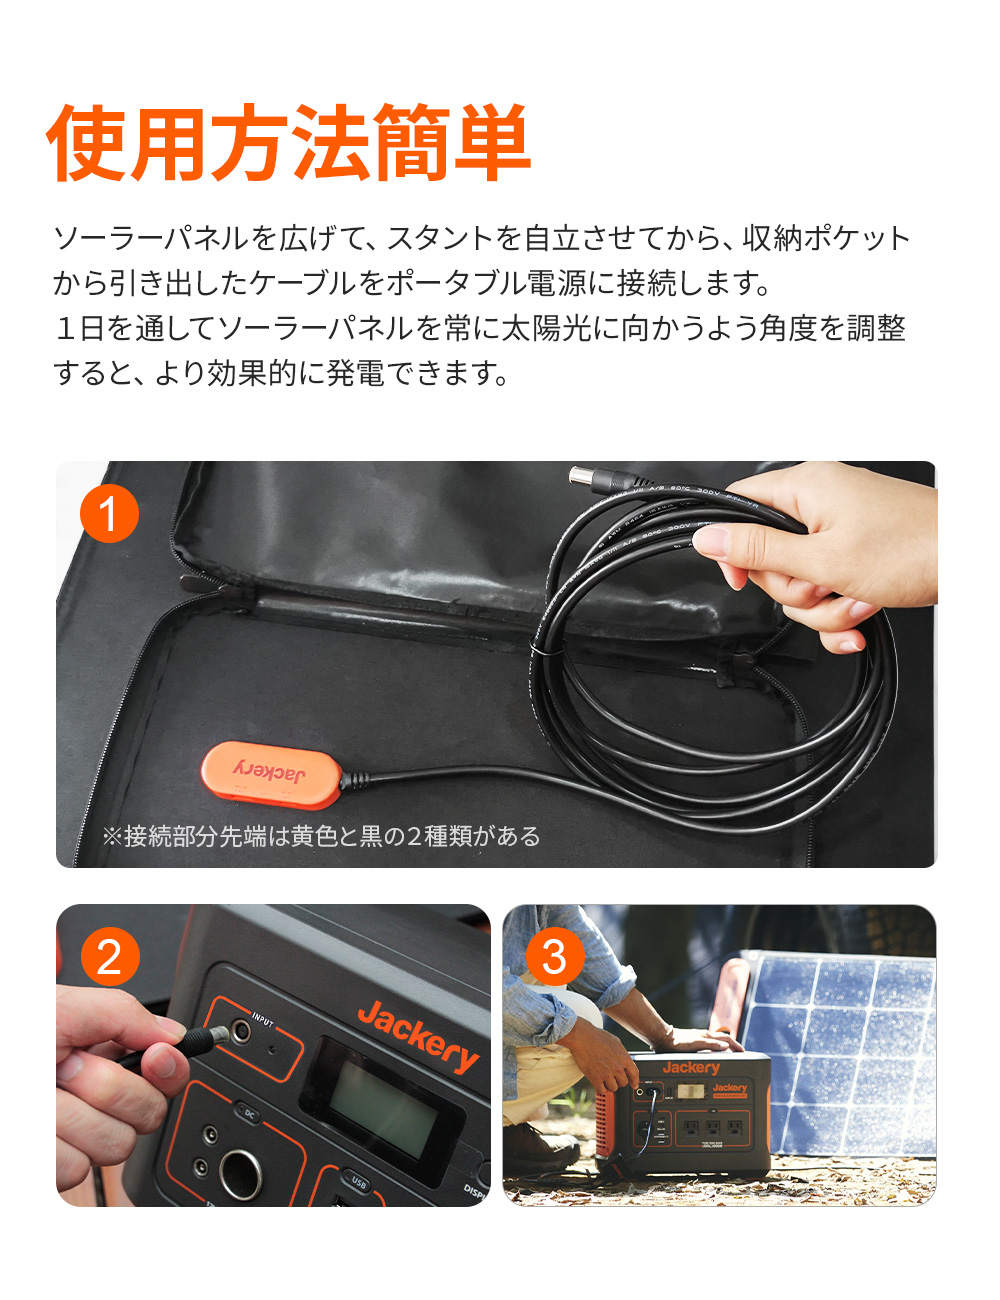 [予約可能]Jackery SolarSaga 100 ソーラーパネル 100W ソーラーチャージャー折りたたみ式 DC/USB スマホやタブレット  23% 超薄型 軽量 コンパクト 単結晶 防災 IP65防水 (18V 5.55A) Jackery ポータブル電源用 | Jackery Japan  